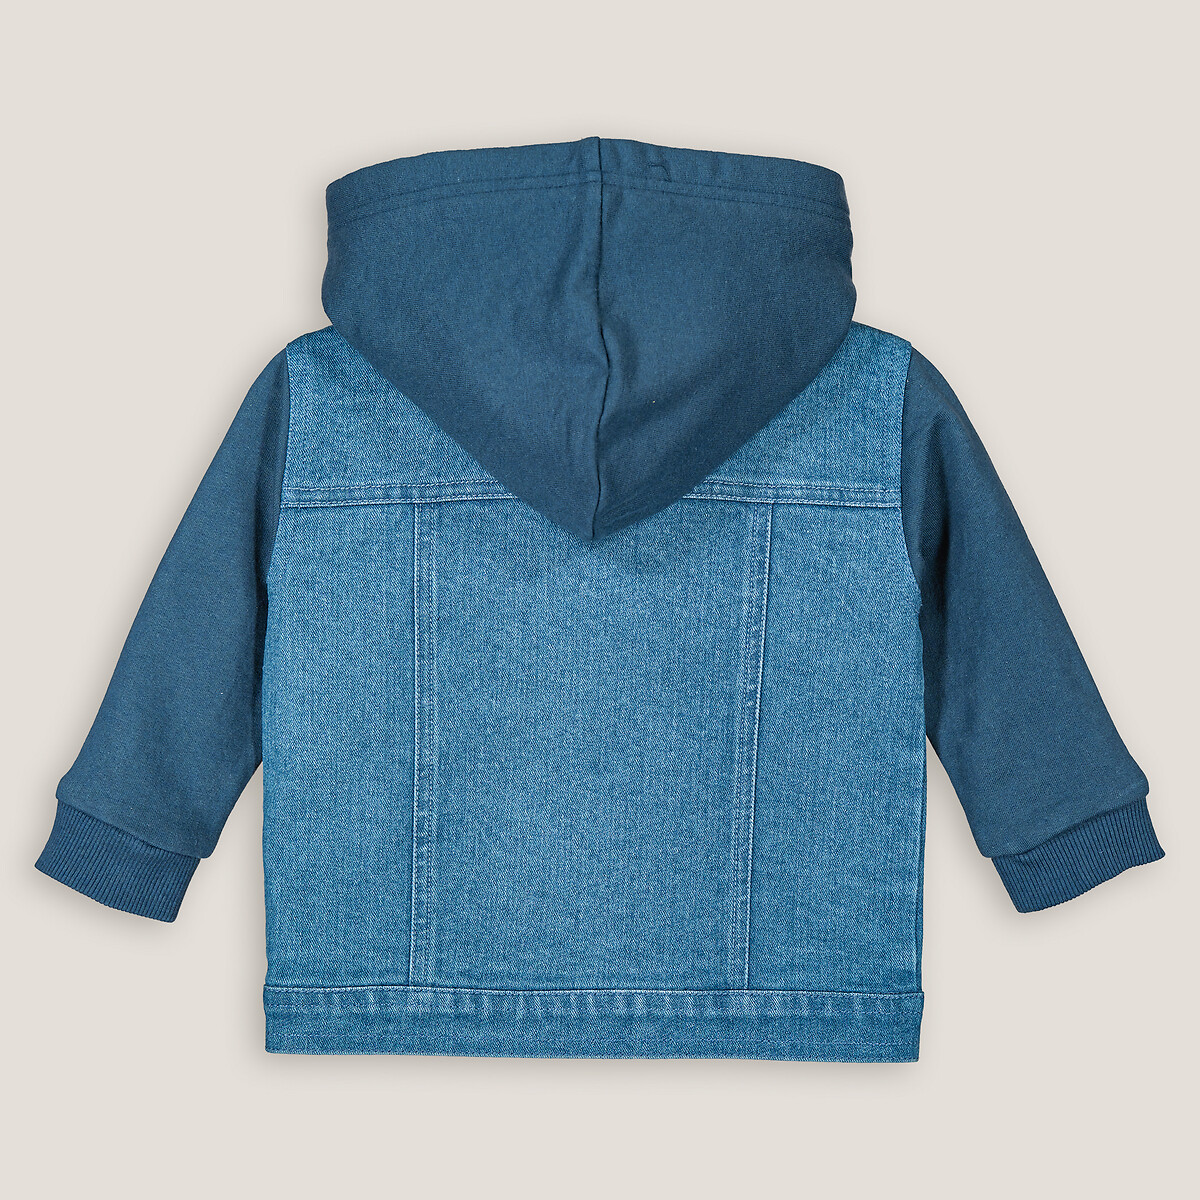 Куртка Из джинсовой ткани и мольтона с капюшоном 1 год - 74 см синий LaRedoute, размер 1 год - 74 см - фото 4